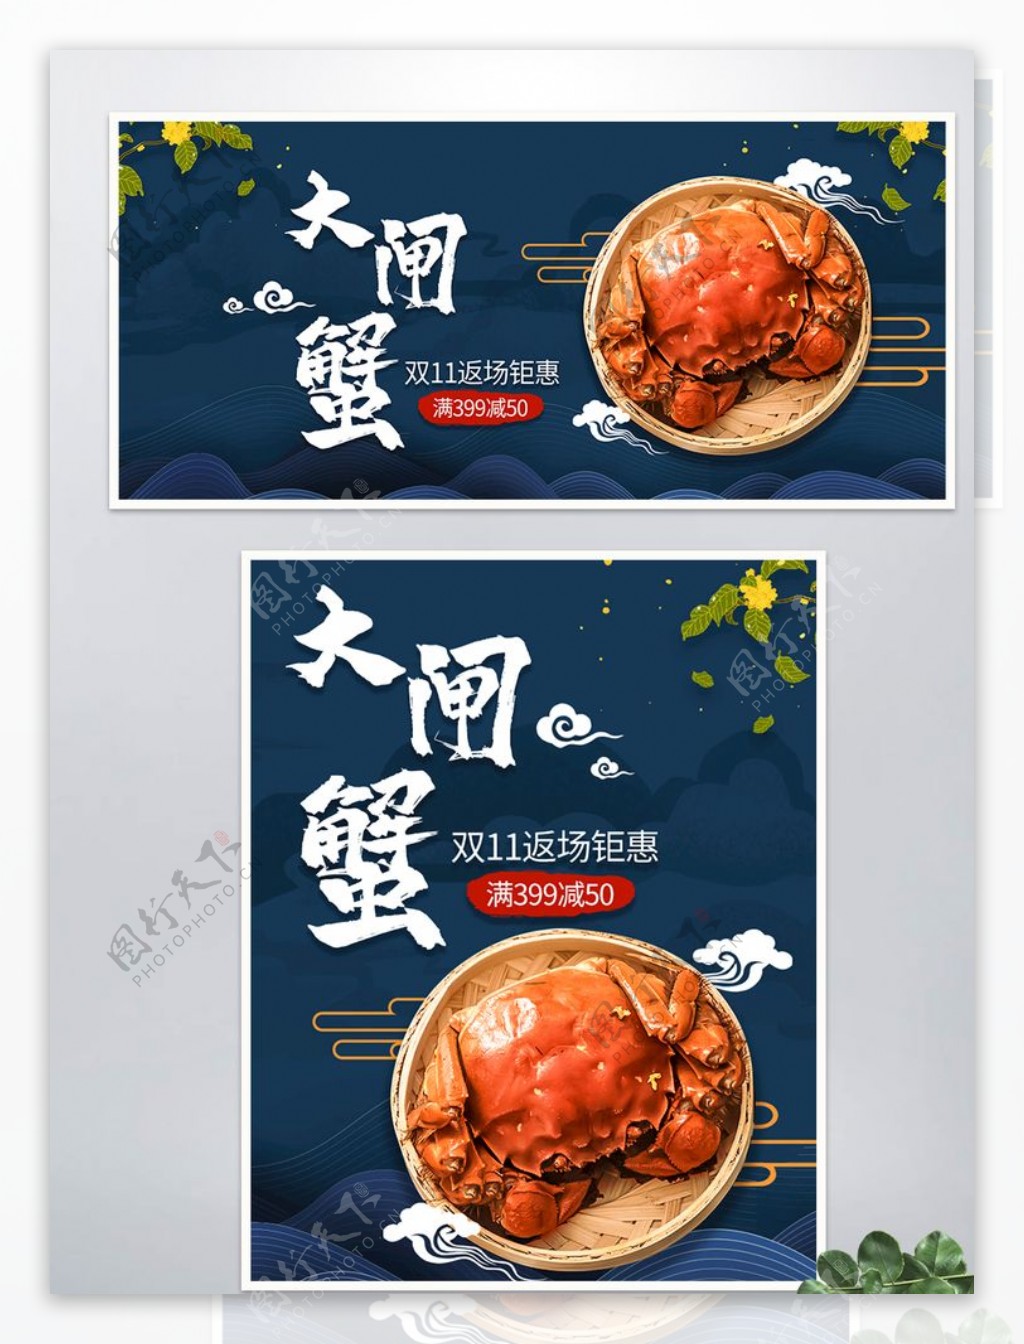 淘宝大闸蟹双11中国风食品海报图片